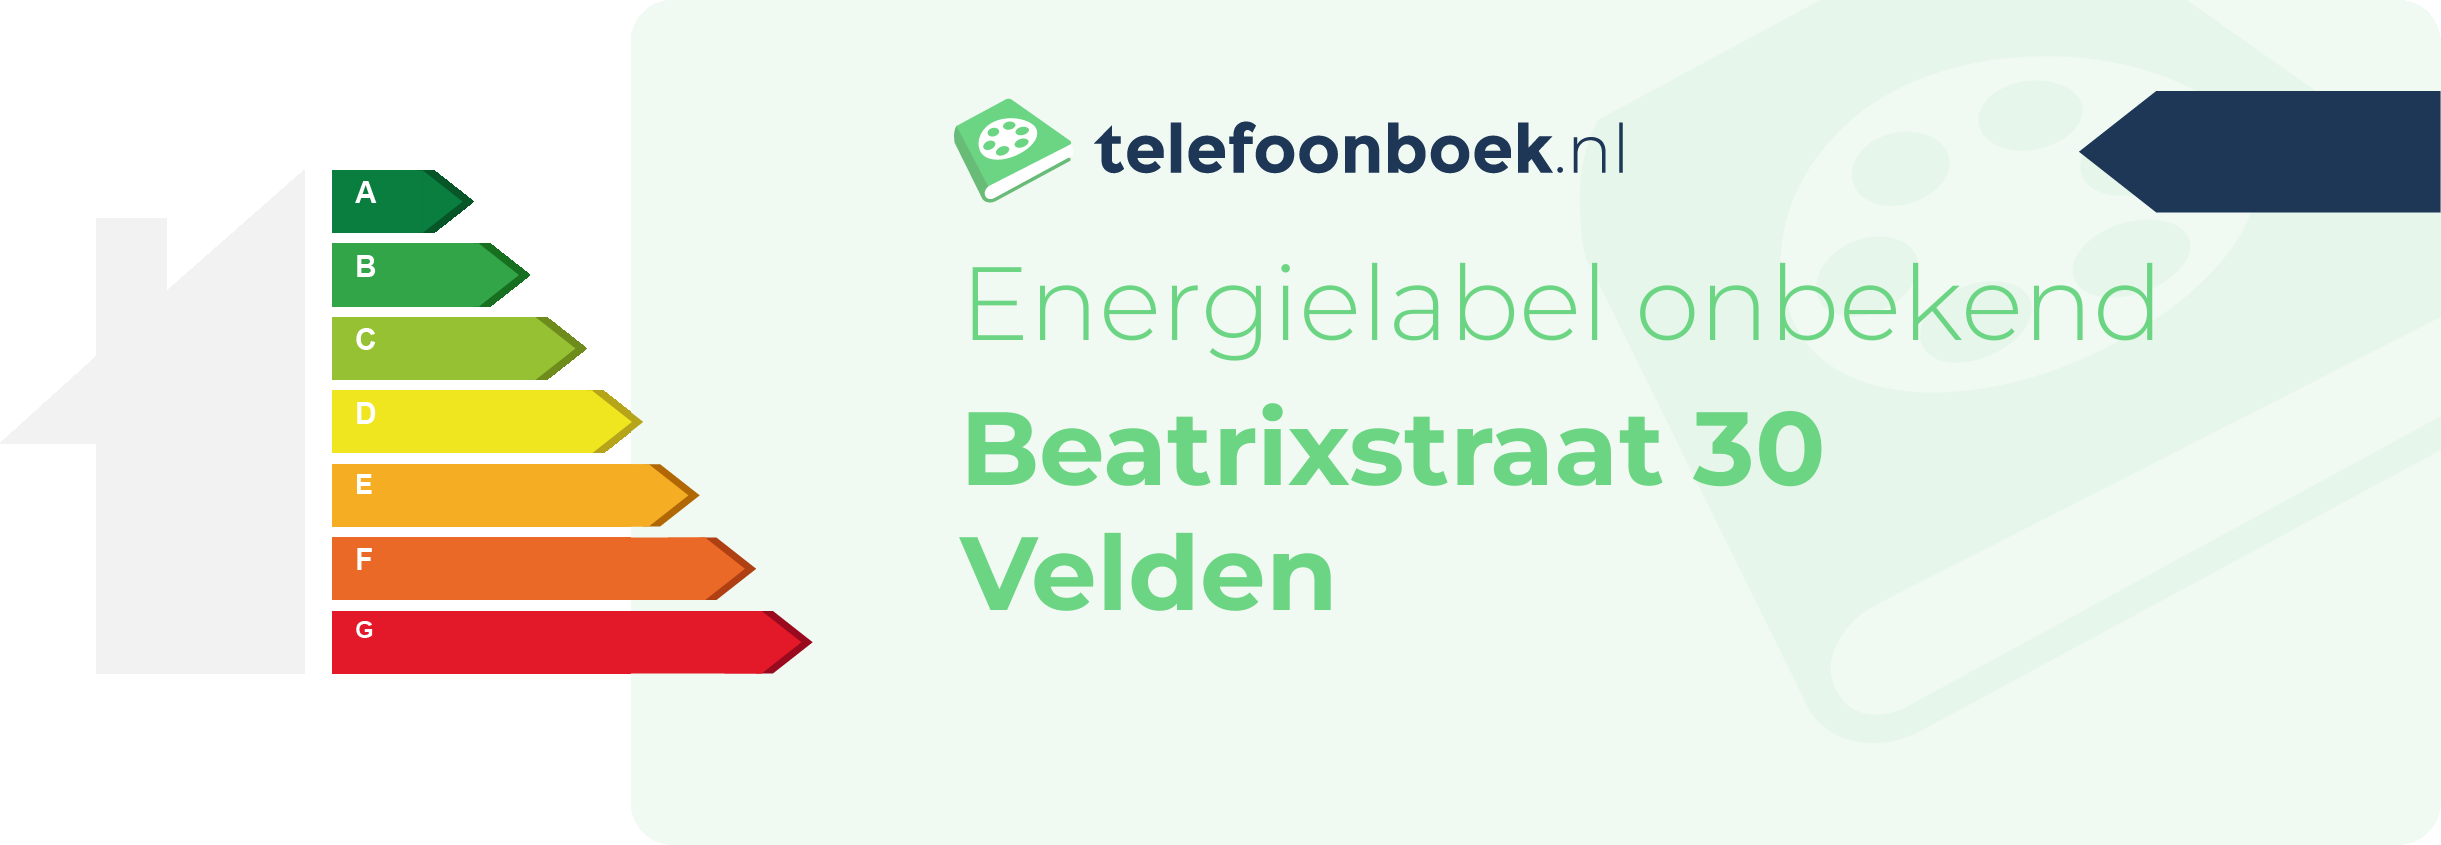 Energielabel Beatrixstraat 30 Velden